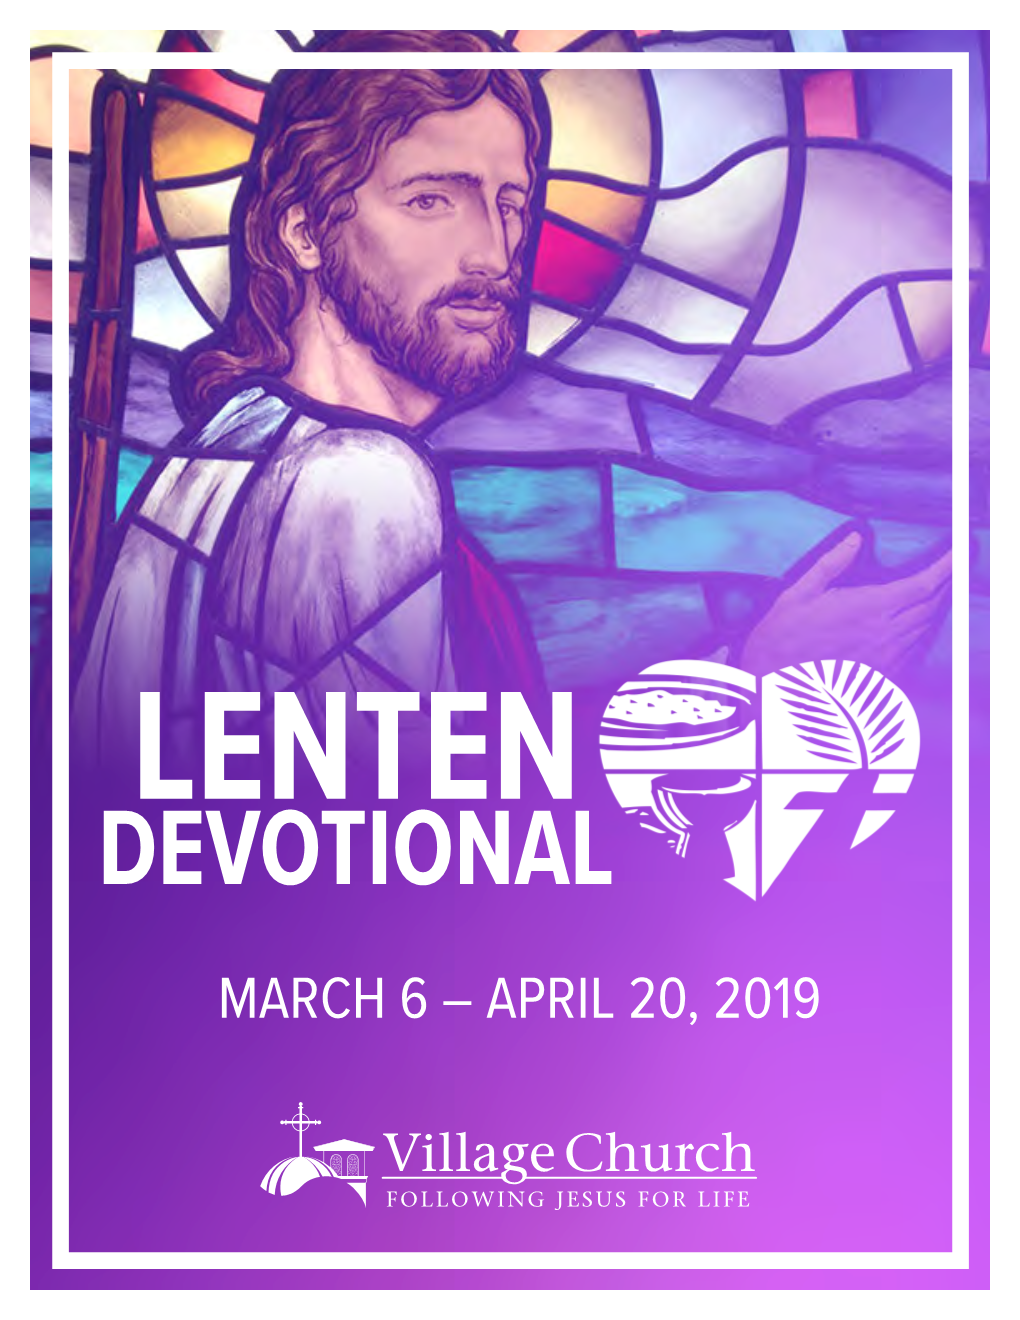 Devotional March 6 – April 20, 2019